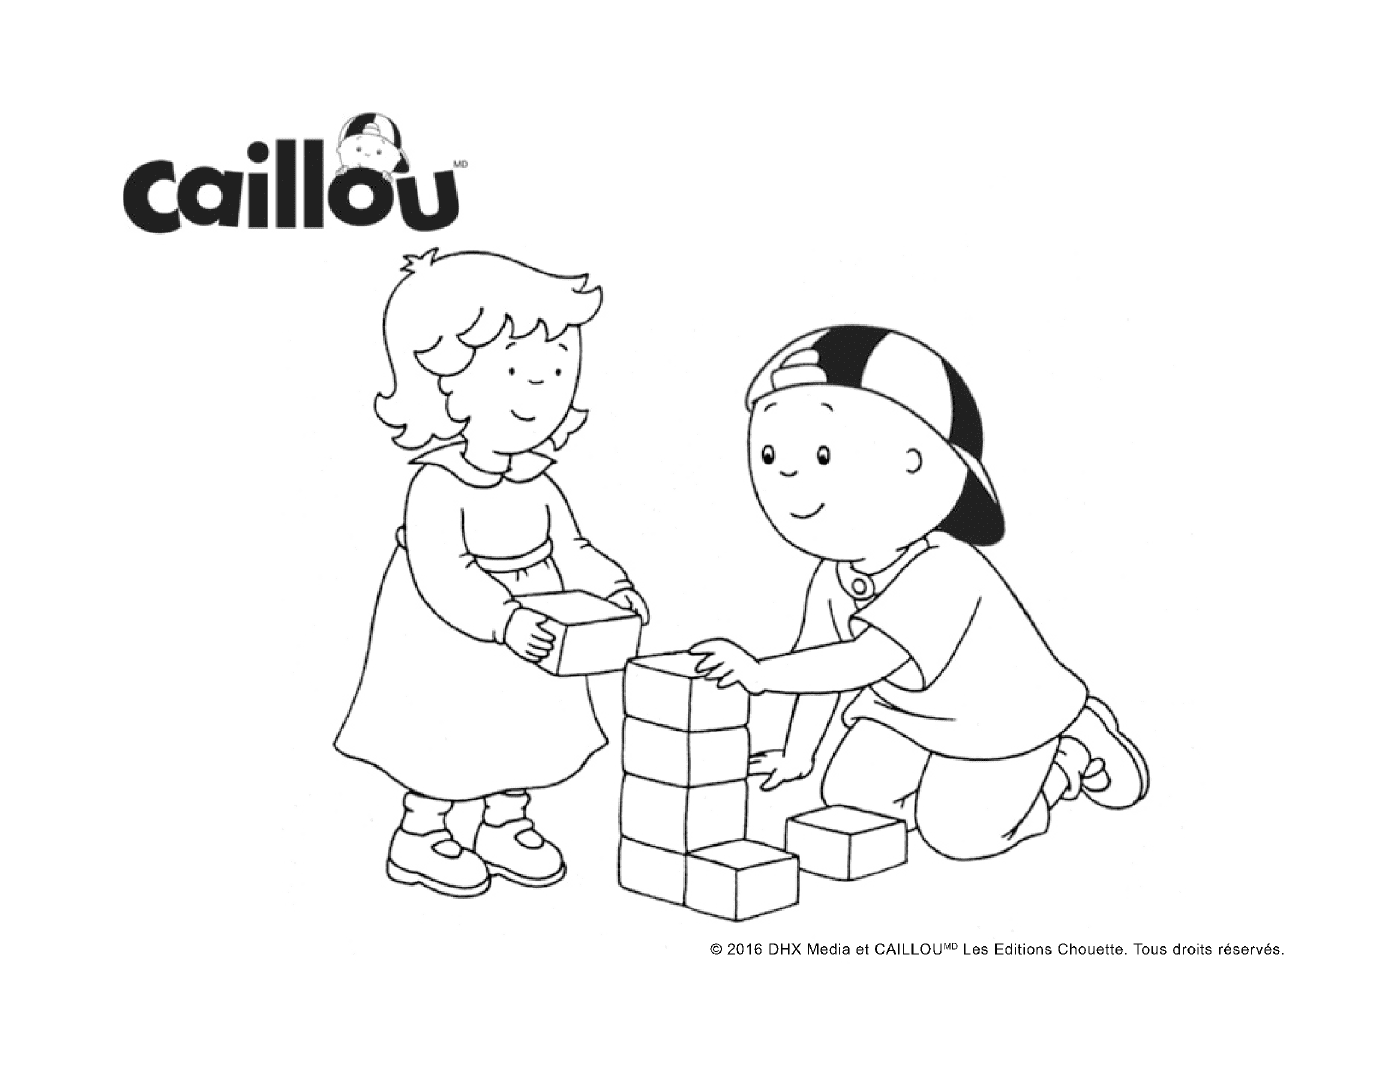  Blockspiel mit Caillou und seiner kleinen Schwester 